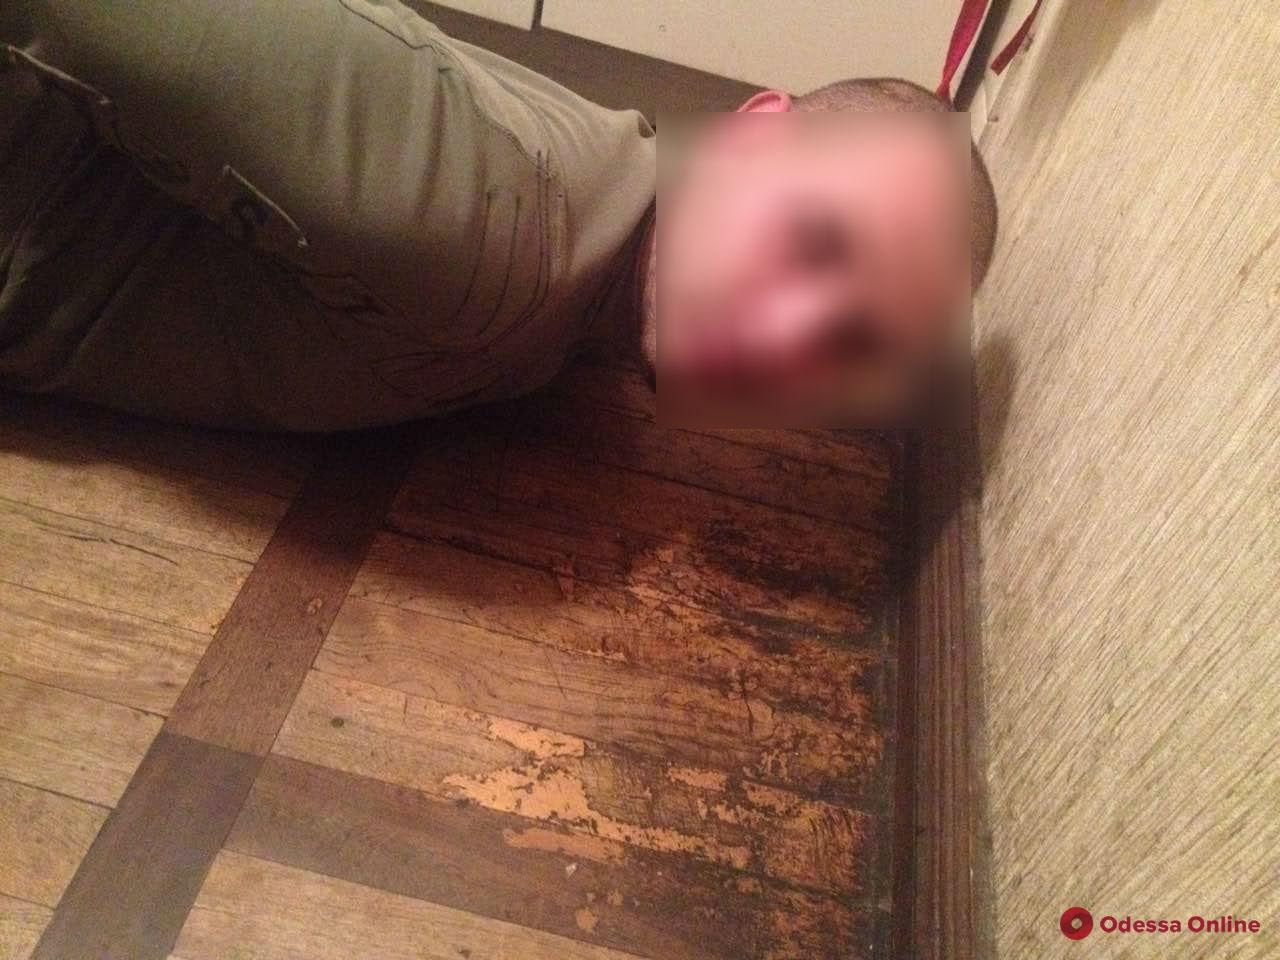 Черный вечер пятницы: в Одессе пасынок убил отчима (осторожно, фото)